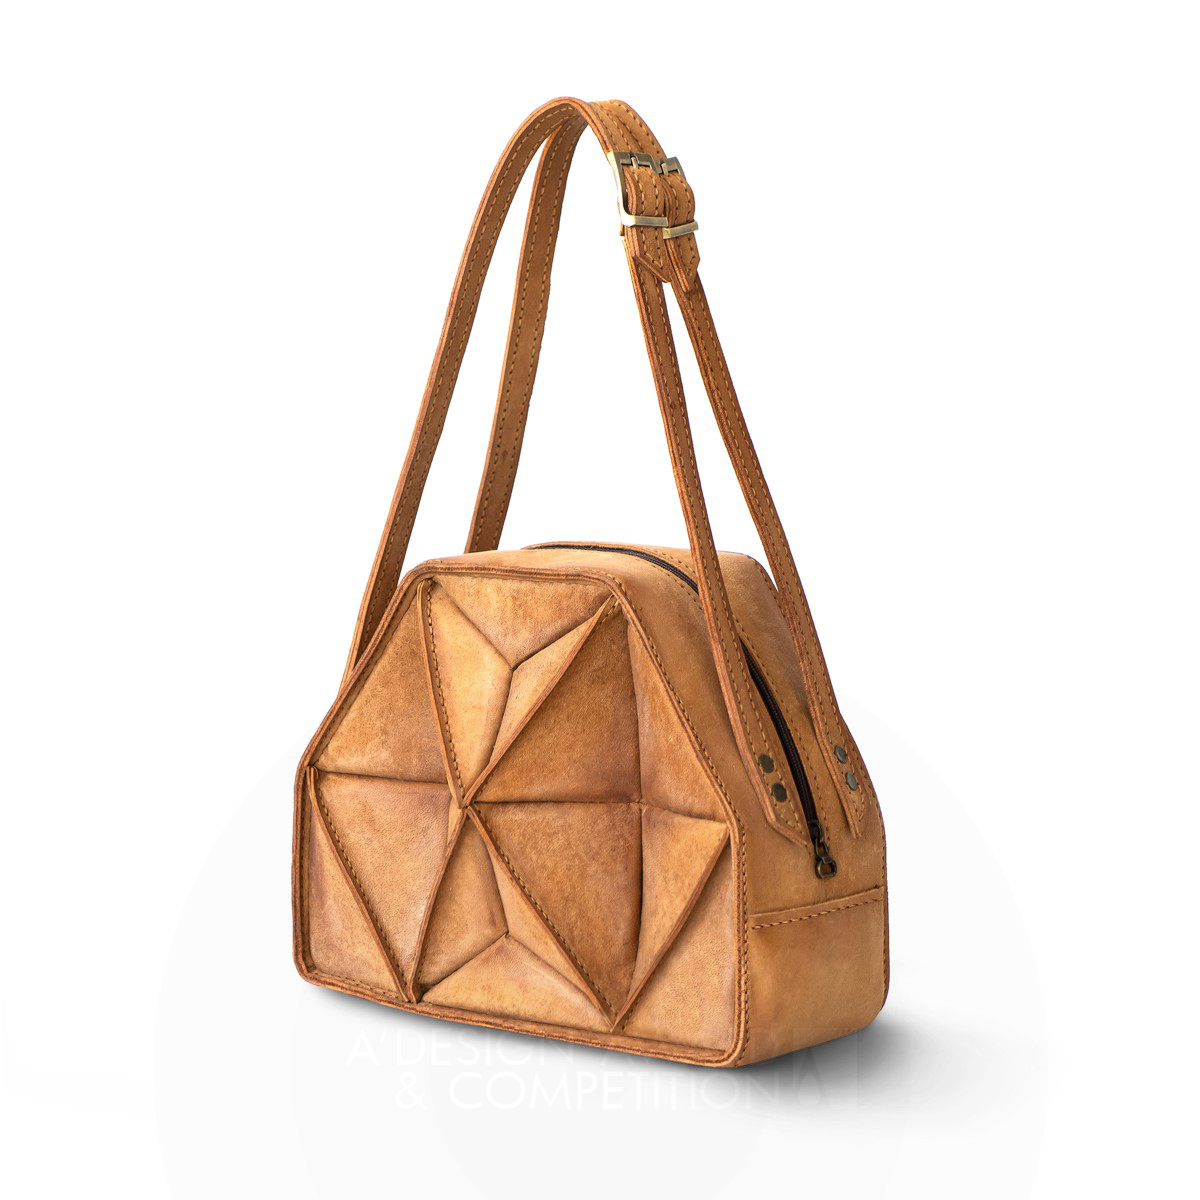 Sarban Leather Bag by Aida Mehranfar